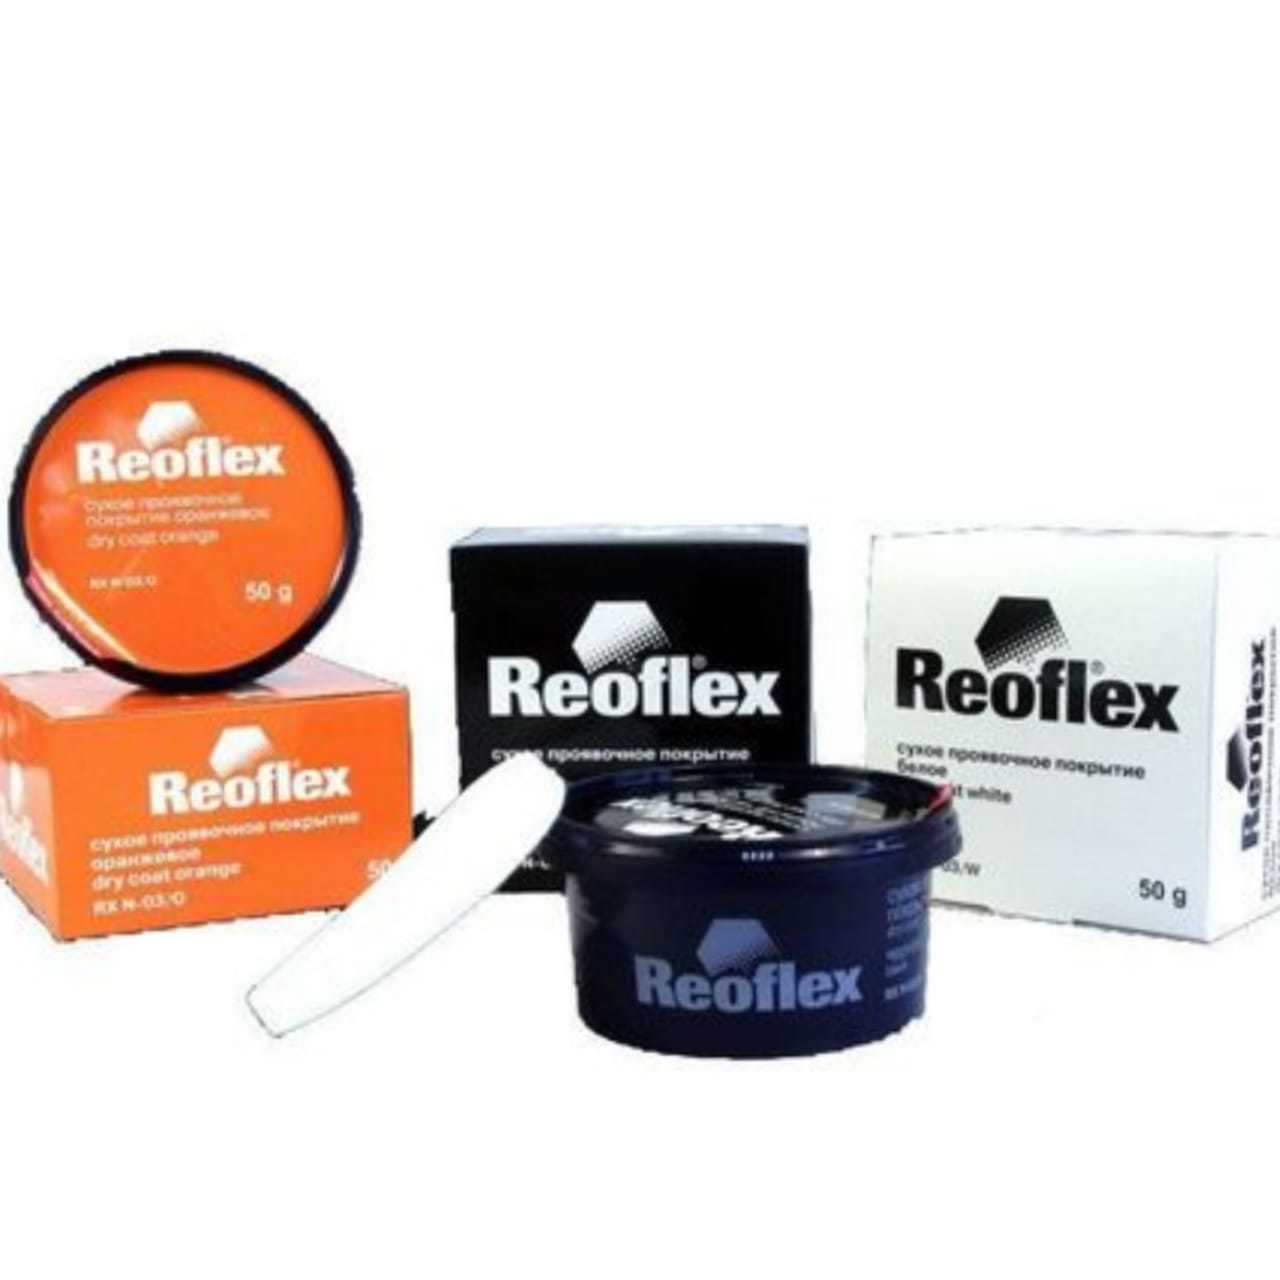 Reoflex Сухое проявочное покрытие оранжевого цвета 50 гр.